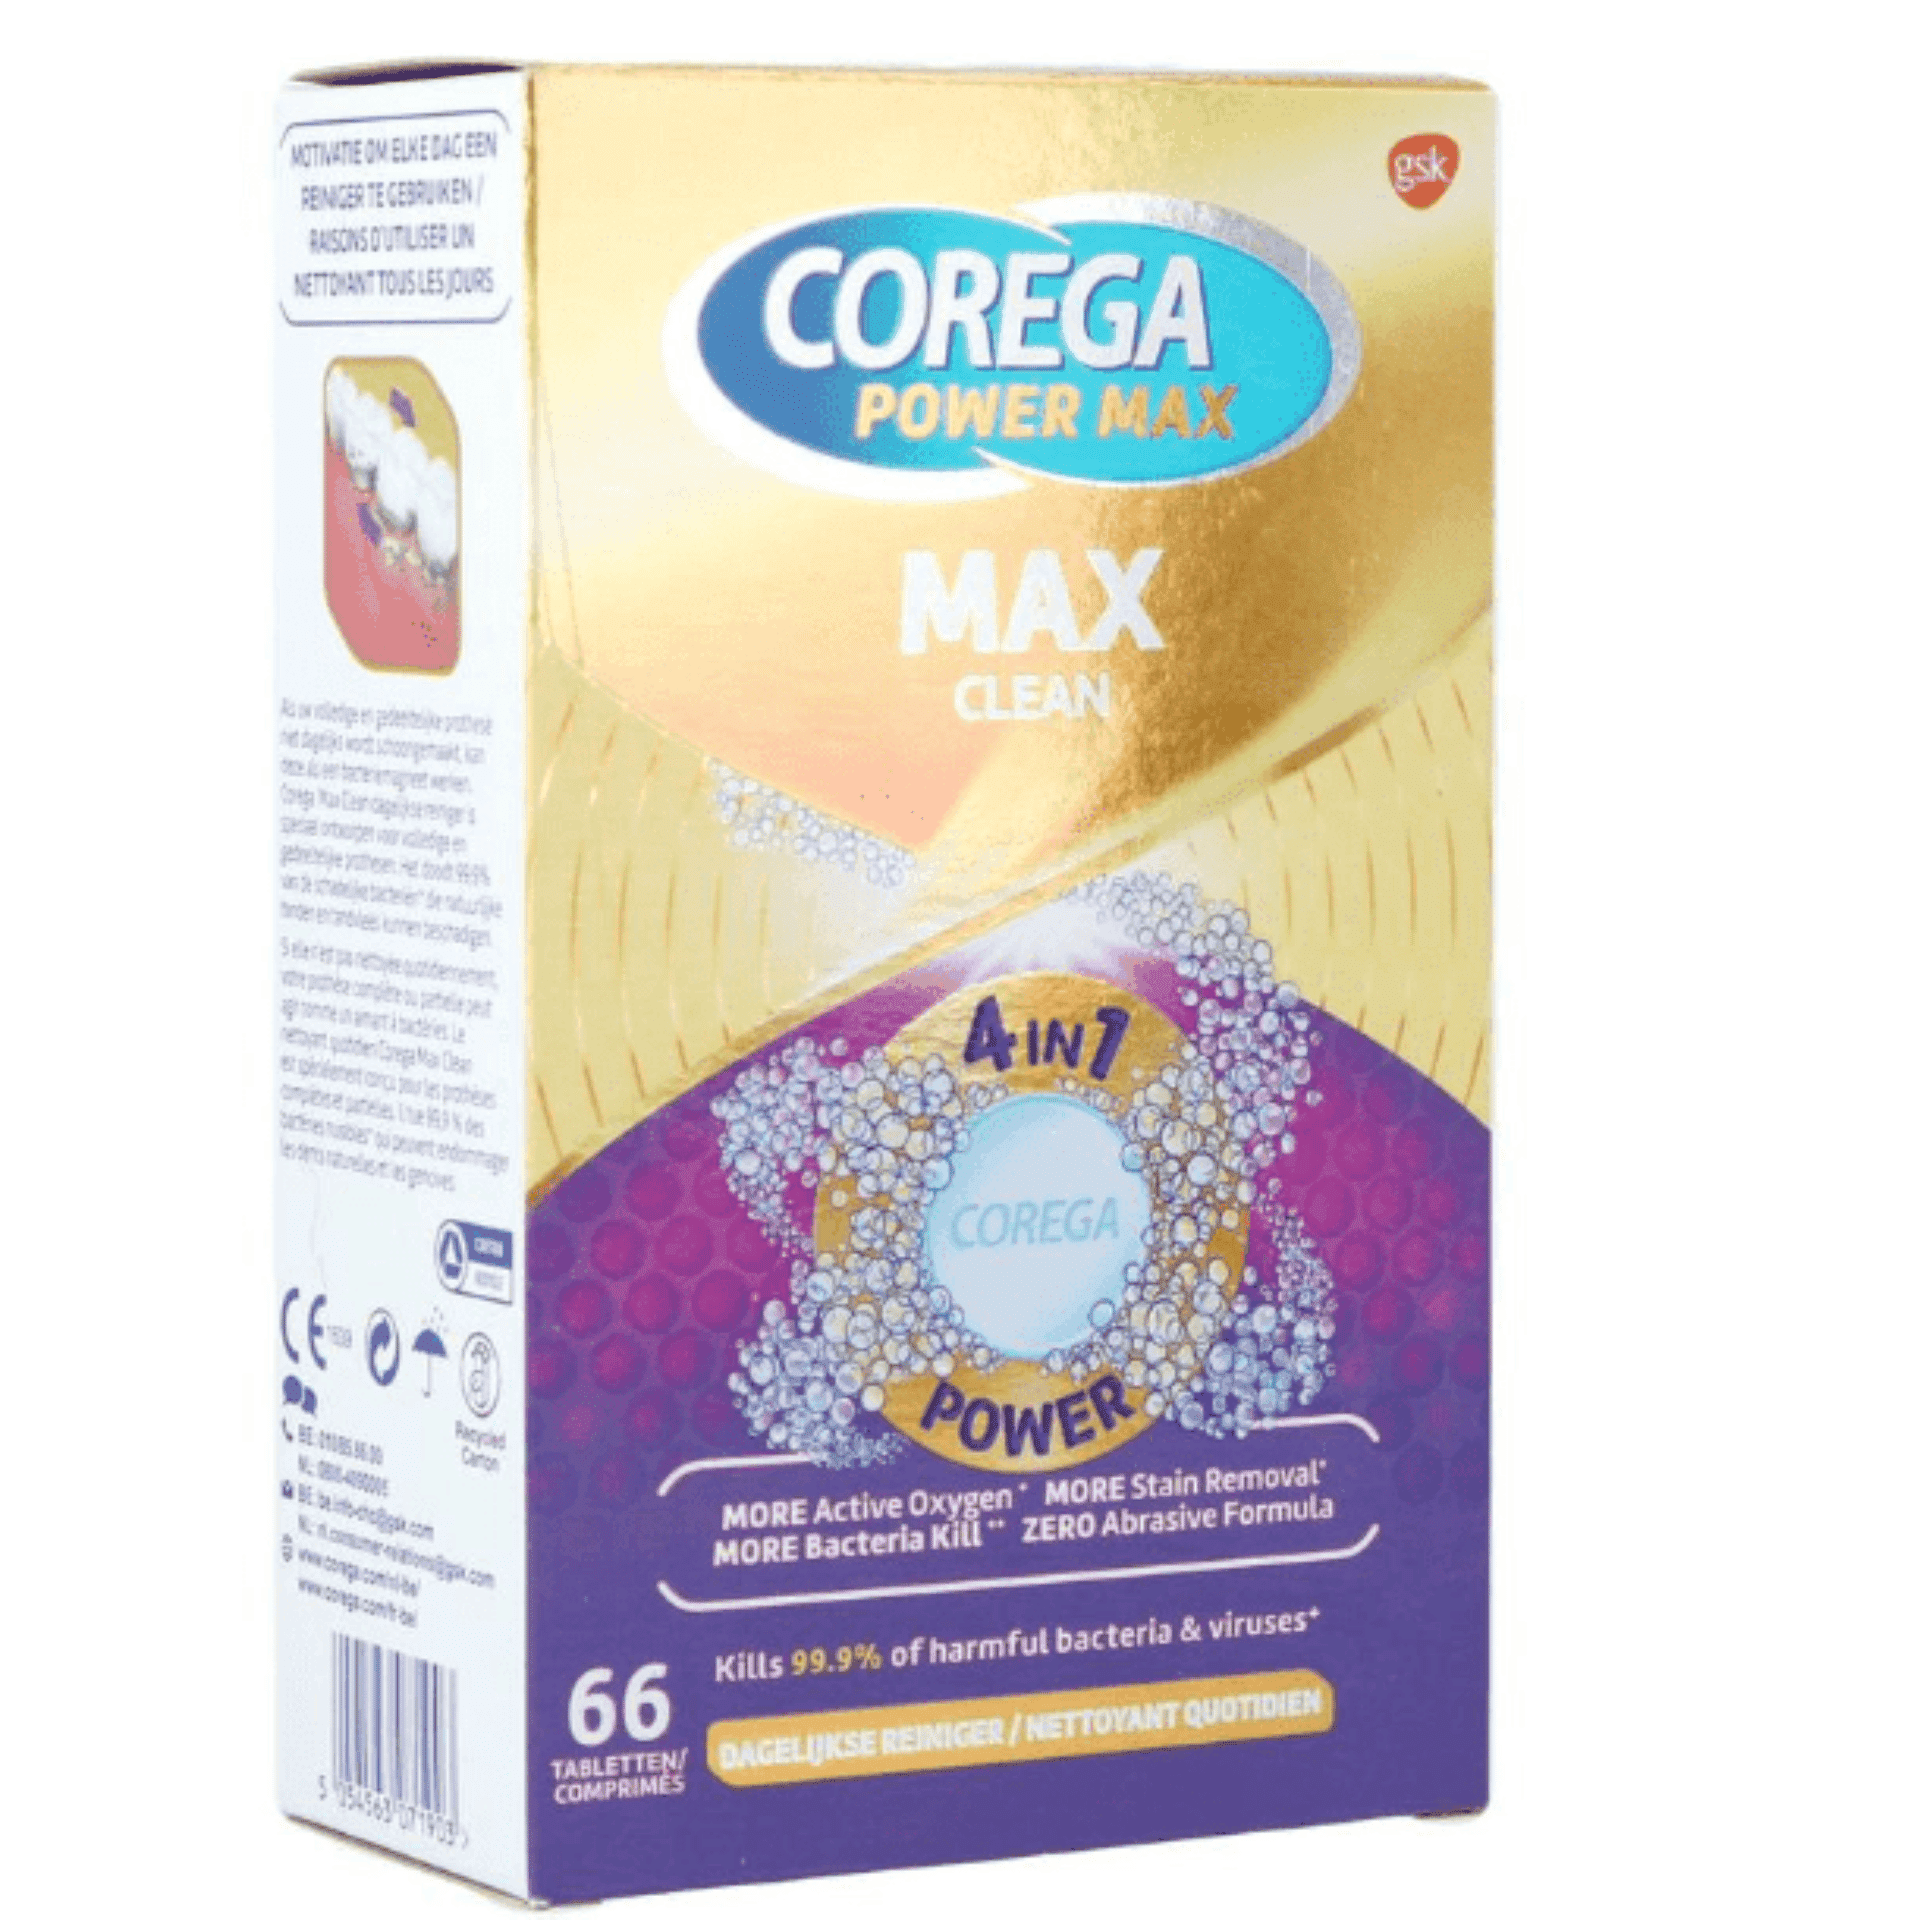 Corega Max Clean cover